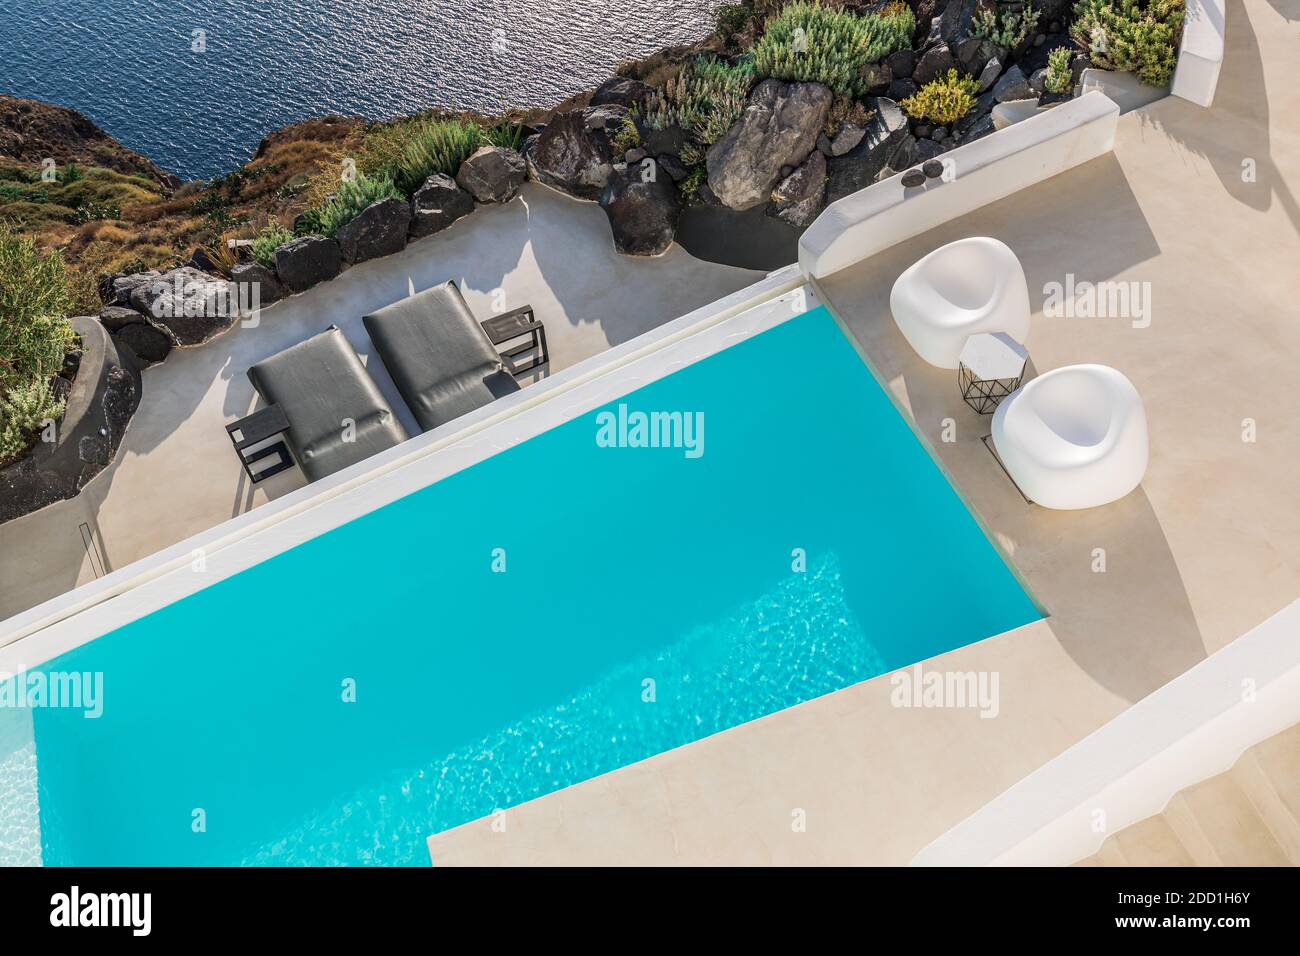 Luxus-Hotelresort und leerer Infinity-Pool Santorini. Sommerurlaub Reiseziel romantische Paar Urlaub. Landschaft mit Blick auf die Caldera Stockfoto